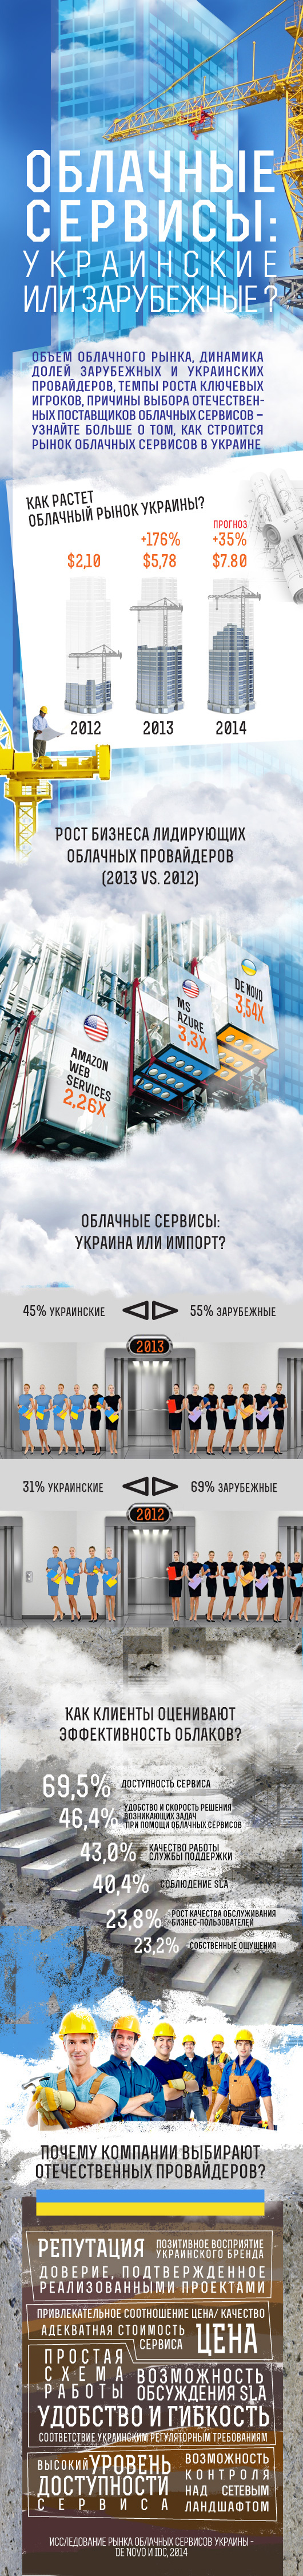 Облачные провайдеры: украинские или зарубежные?